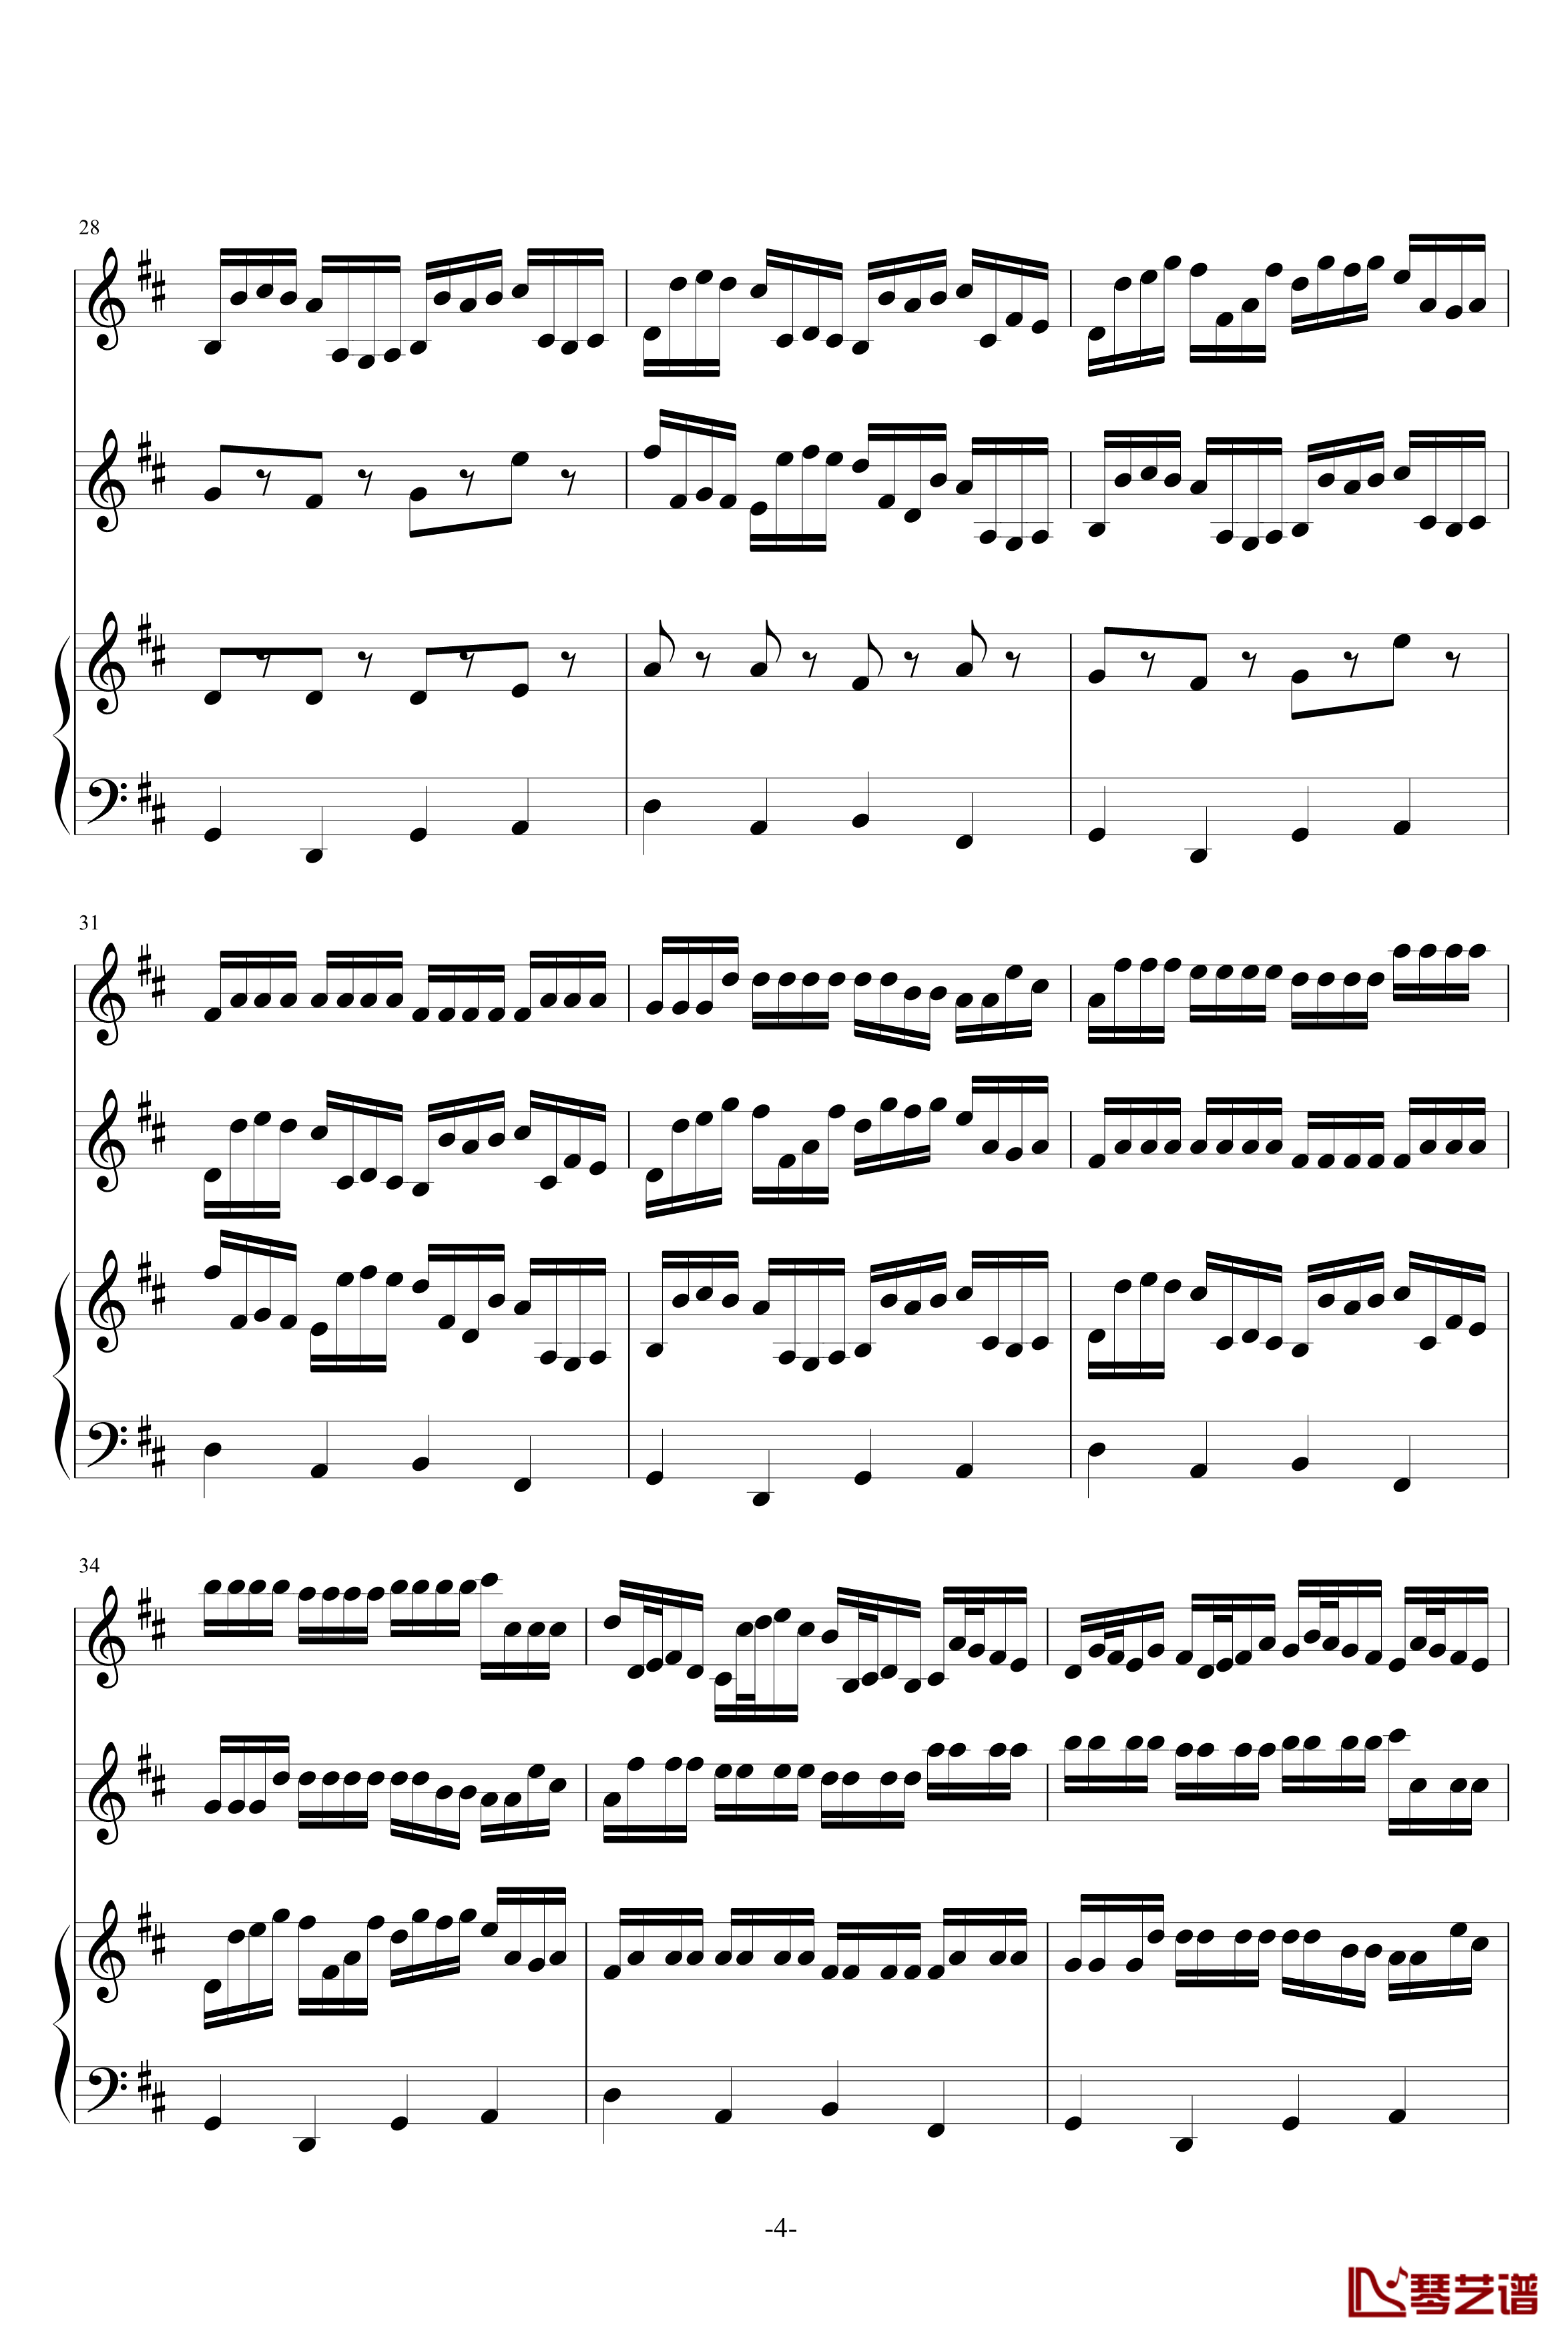 卡农原版钢琴谱-三小提琴-大提琴-帕赫贝尔-Pachelbel4